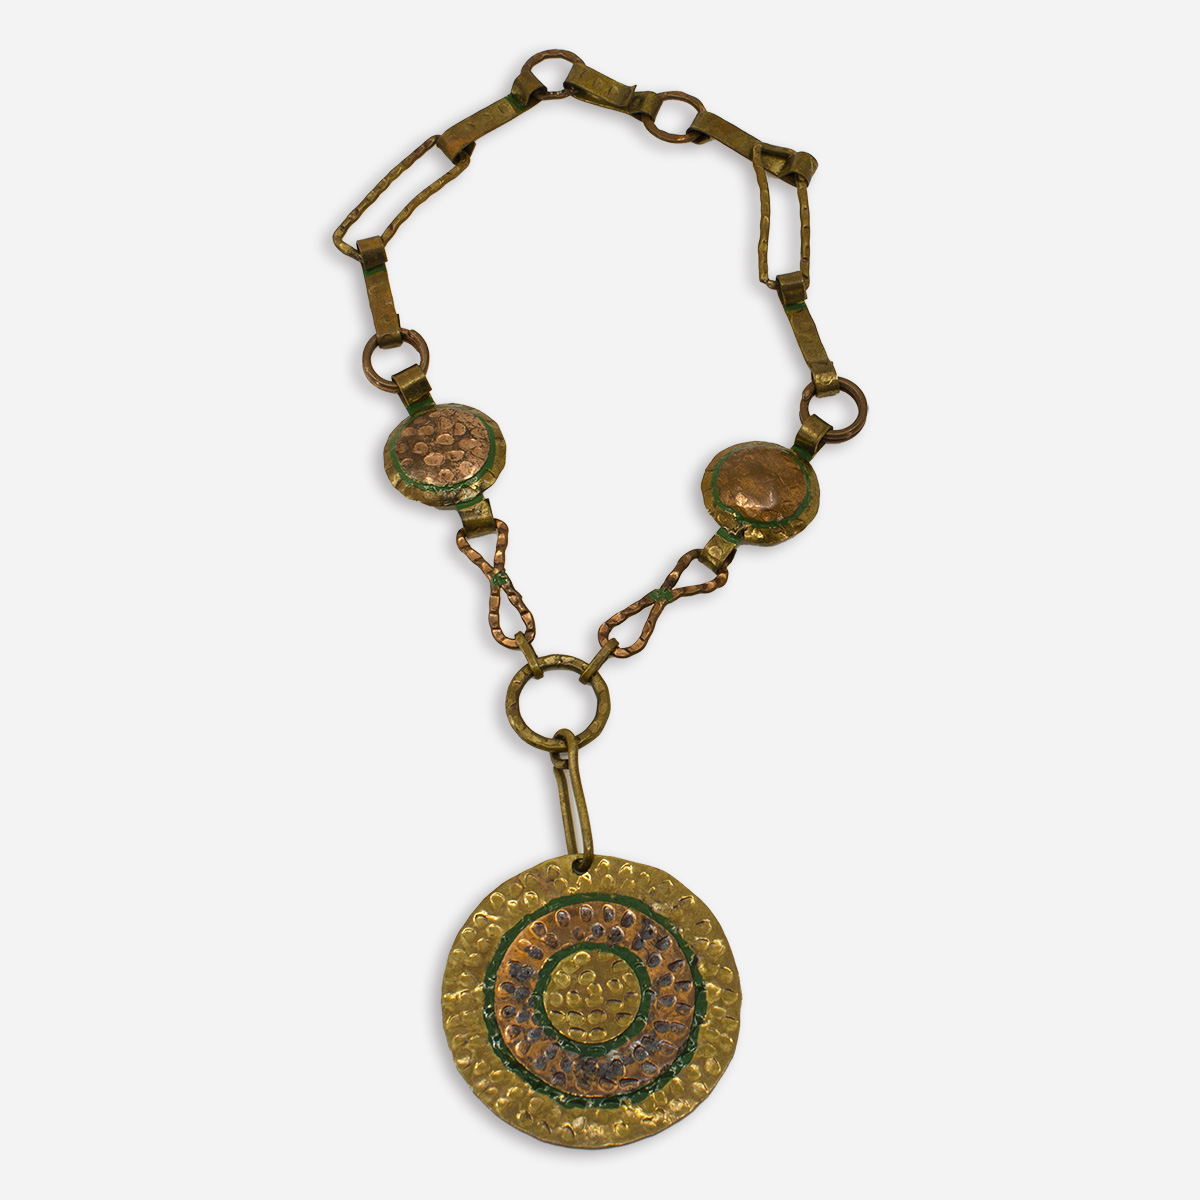 Casa maya necklace